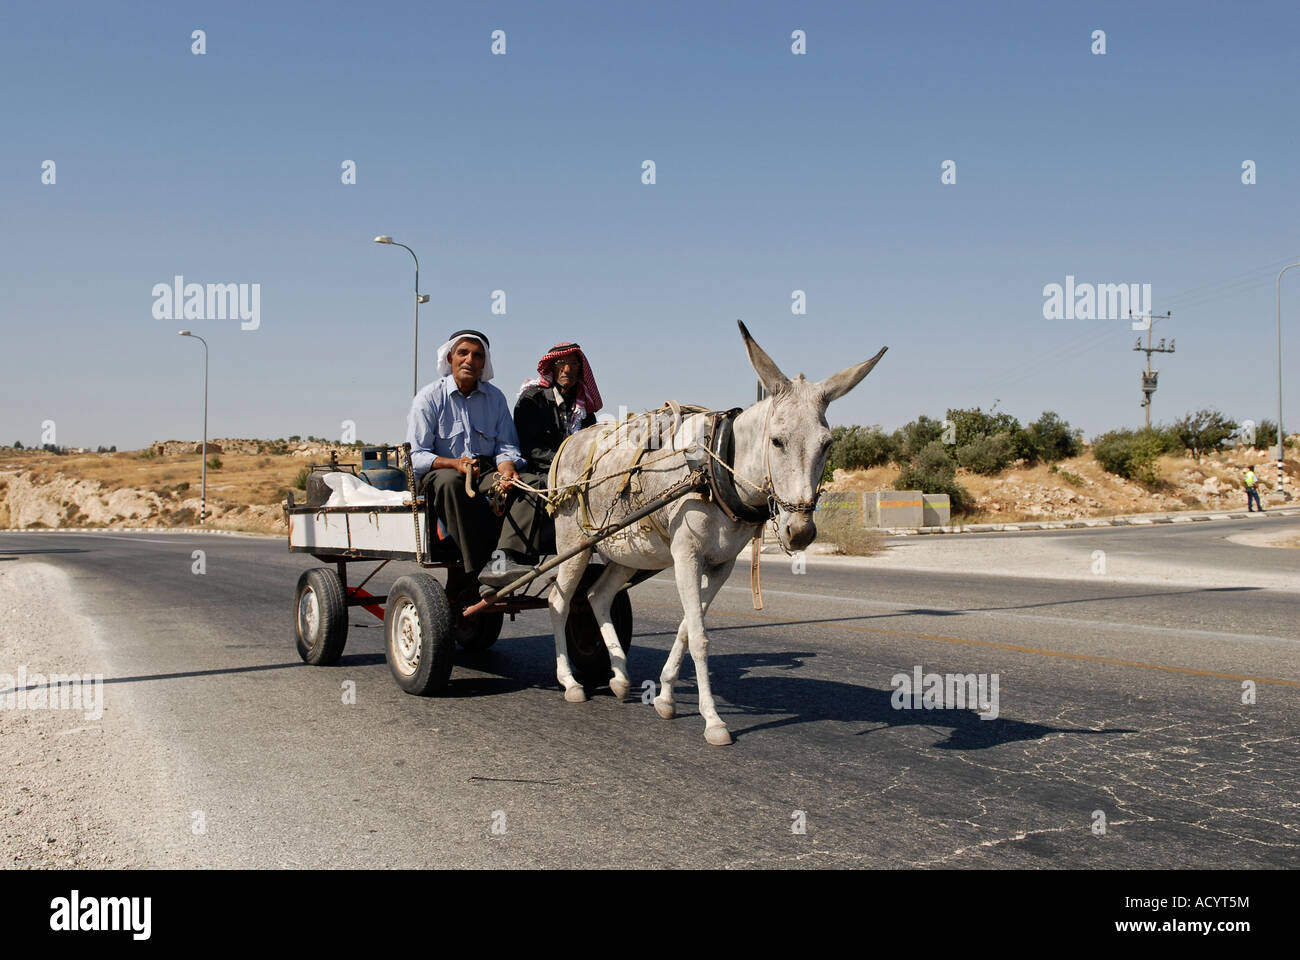 Les villageois palestiniens à cheval sur un âne en chariot au sud de la région d'Hébron, en Cisjordanie. Israël Banque D'Images